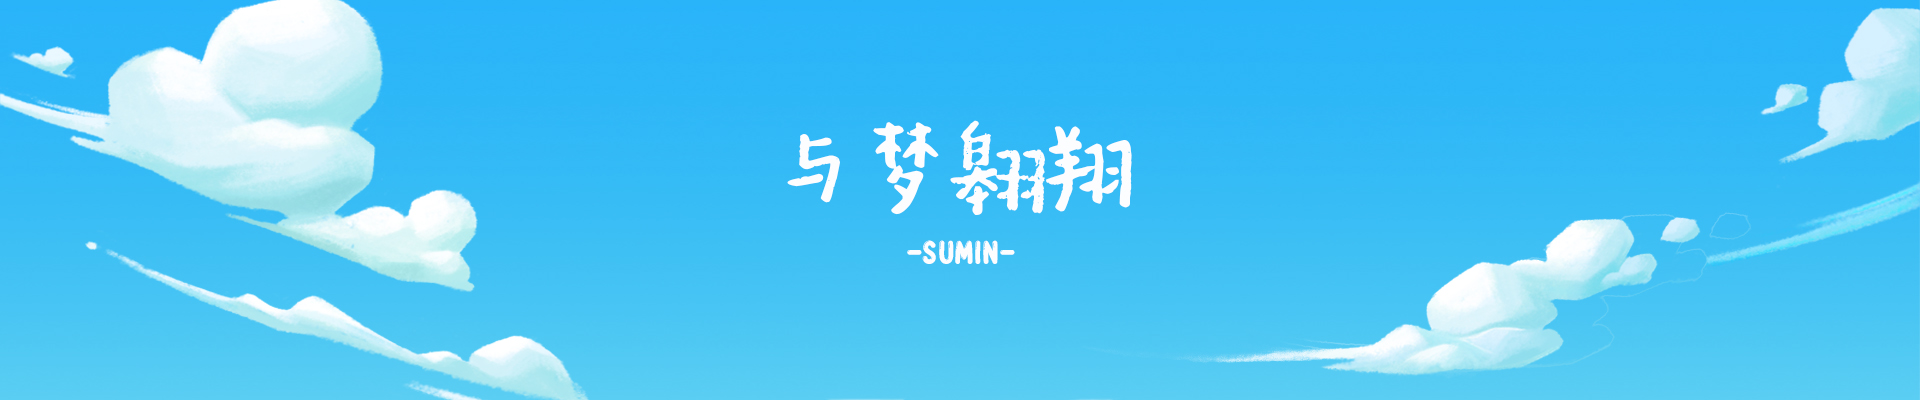 Sumin Banner